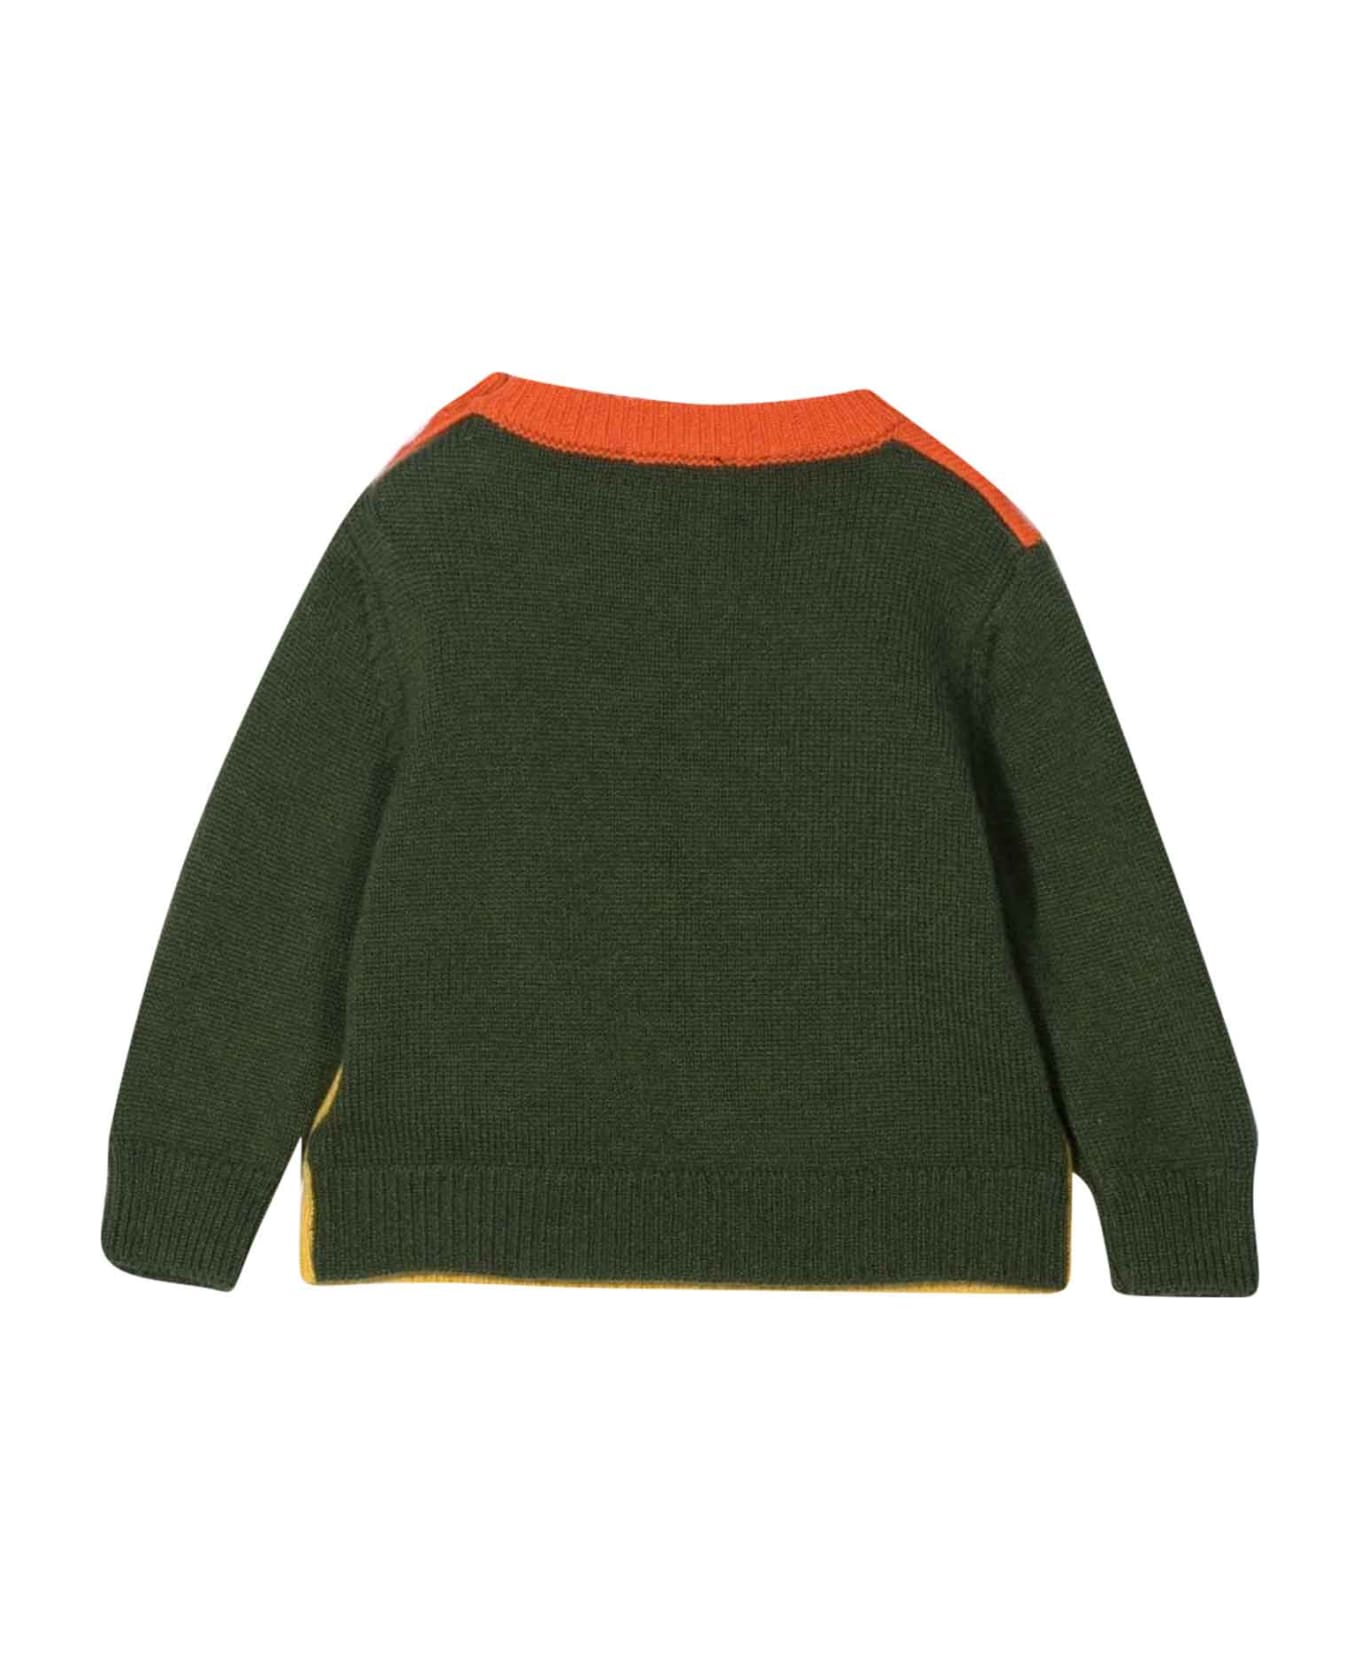 Fay Multicolor Sweater Baby Boy - Multicolor